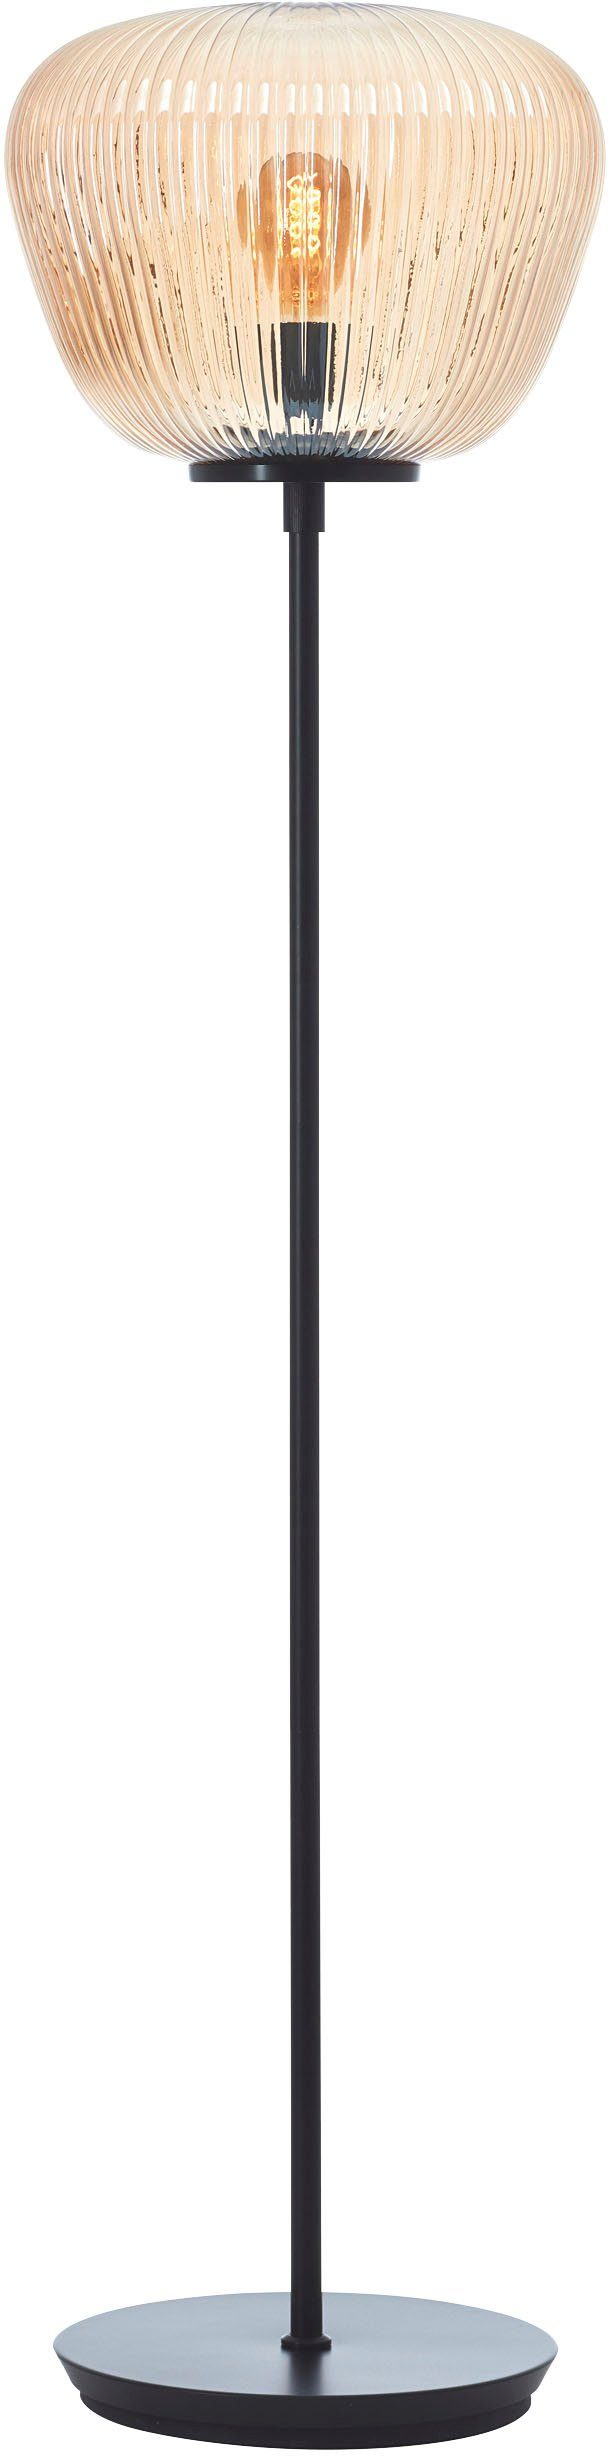 Brilliant Stehlampe Kaizen, Kaizen Stehleuchte 140cm amber-bernstein/schwarz  matt Metall braun 1x